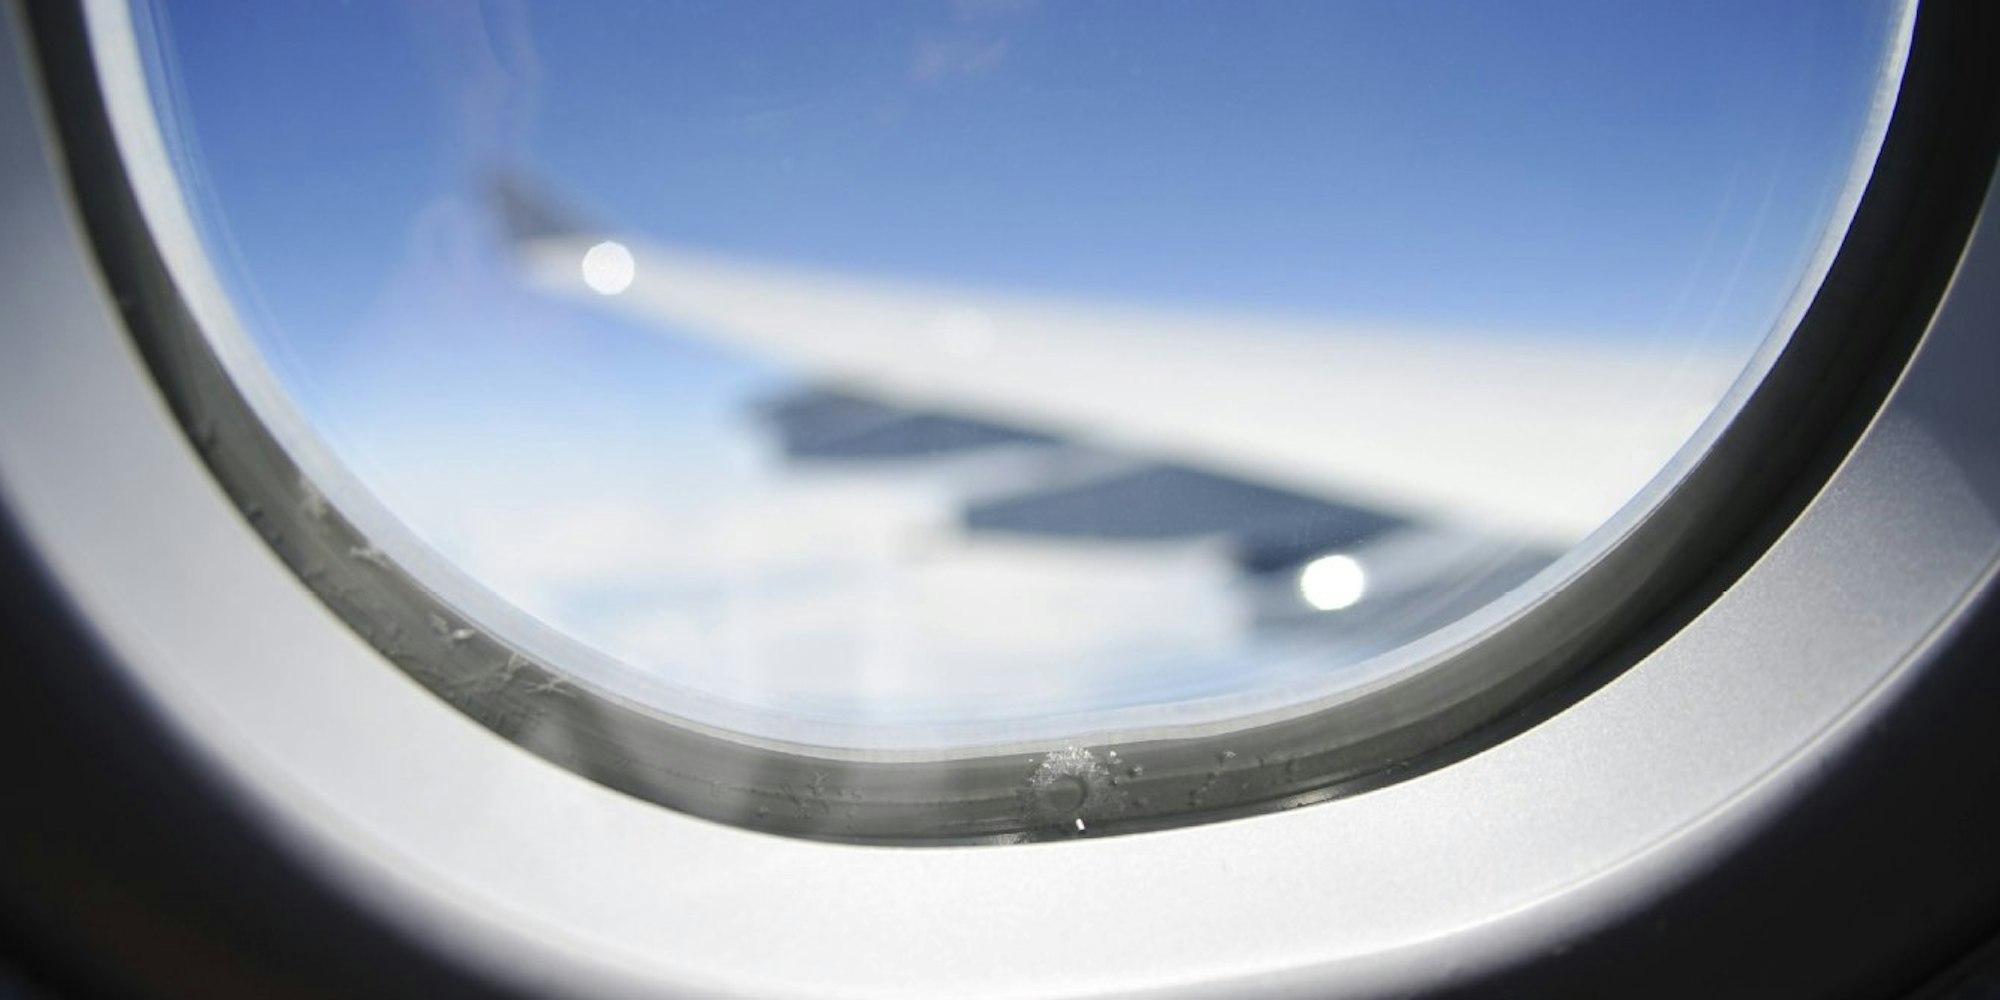 Das kleine runde Loch am unteren Rand des Flugzeugfensters erfüllt eine ganz bestimmte Funktion.